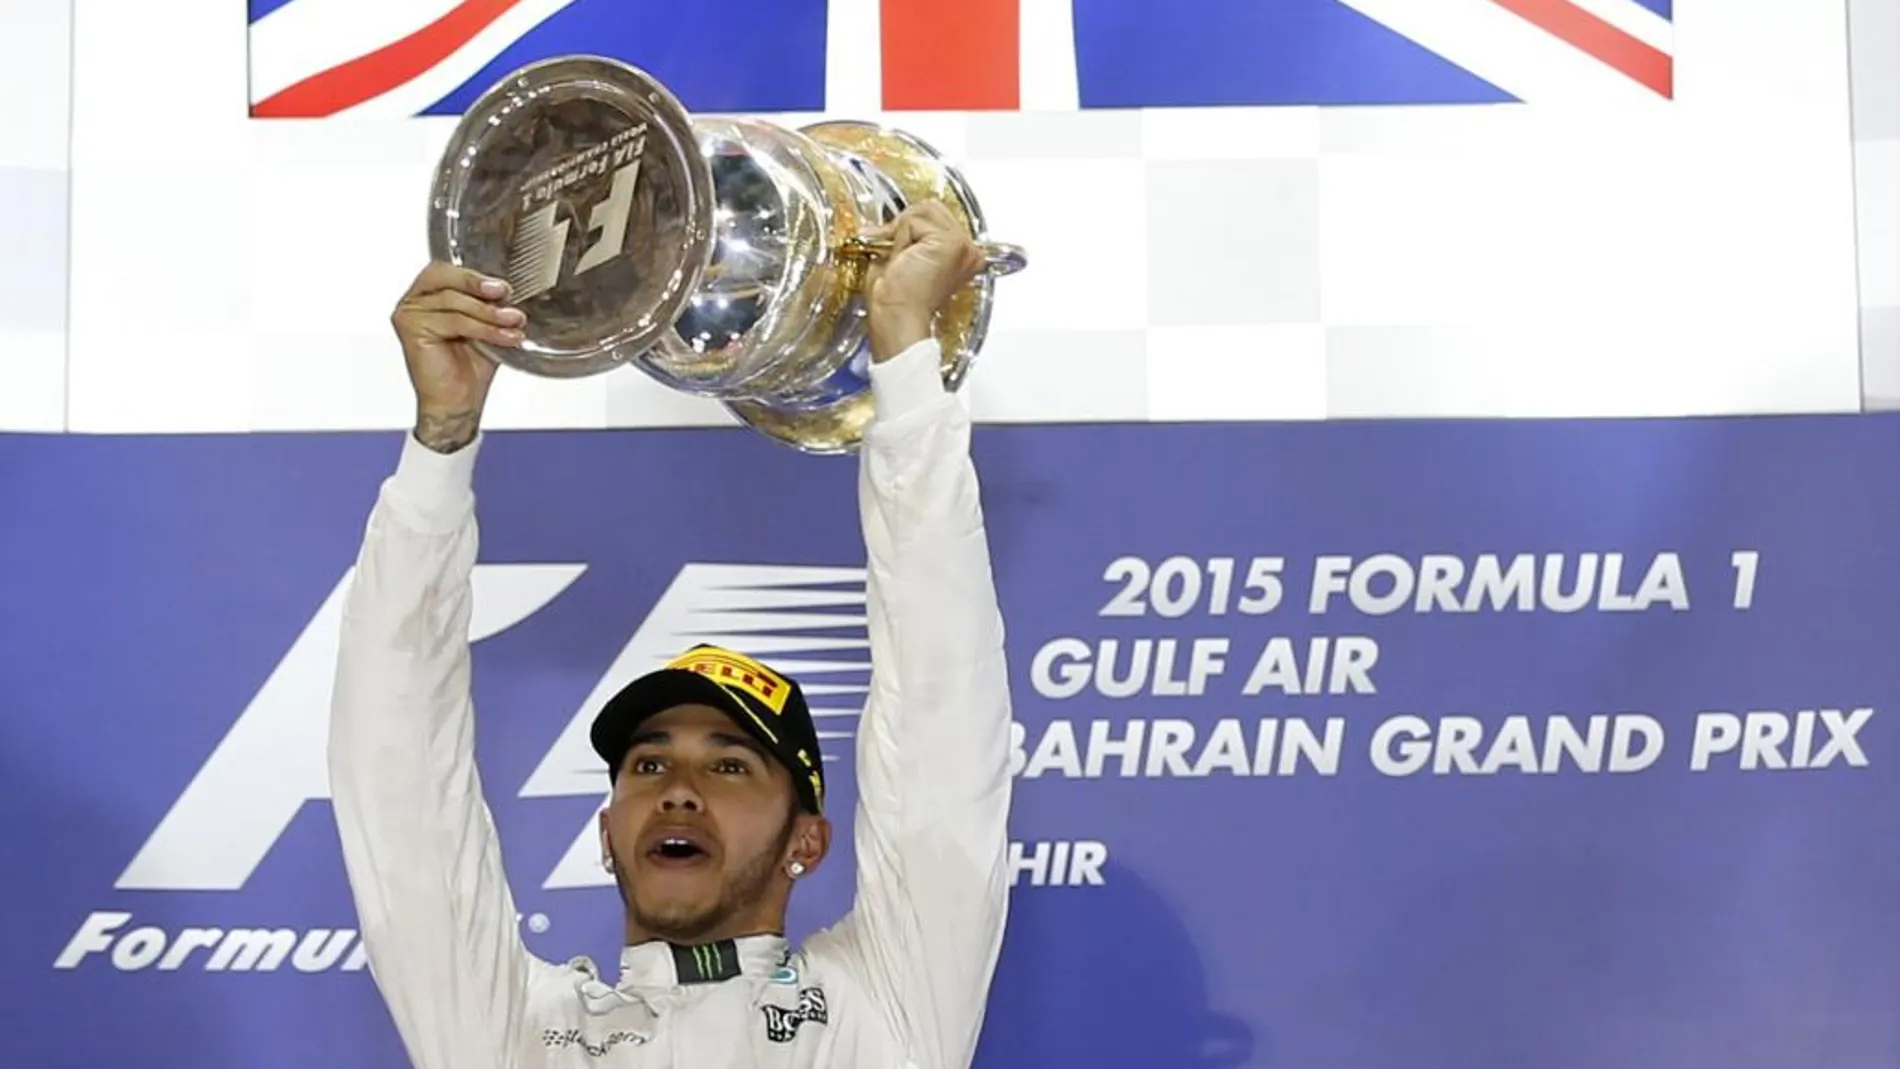 Lewis Hamilton hoy, en el podio tras ganar el Gran Premio de Bahréin.